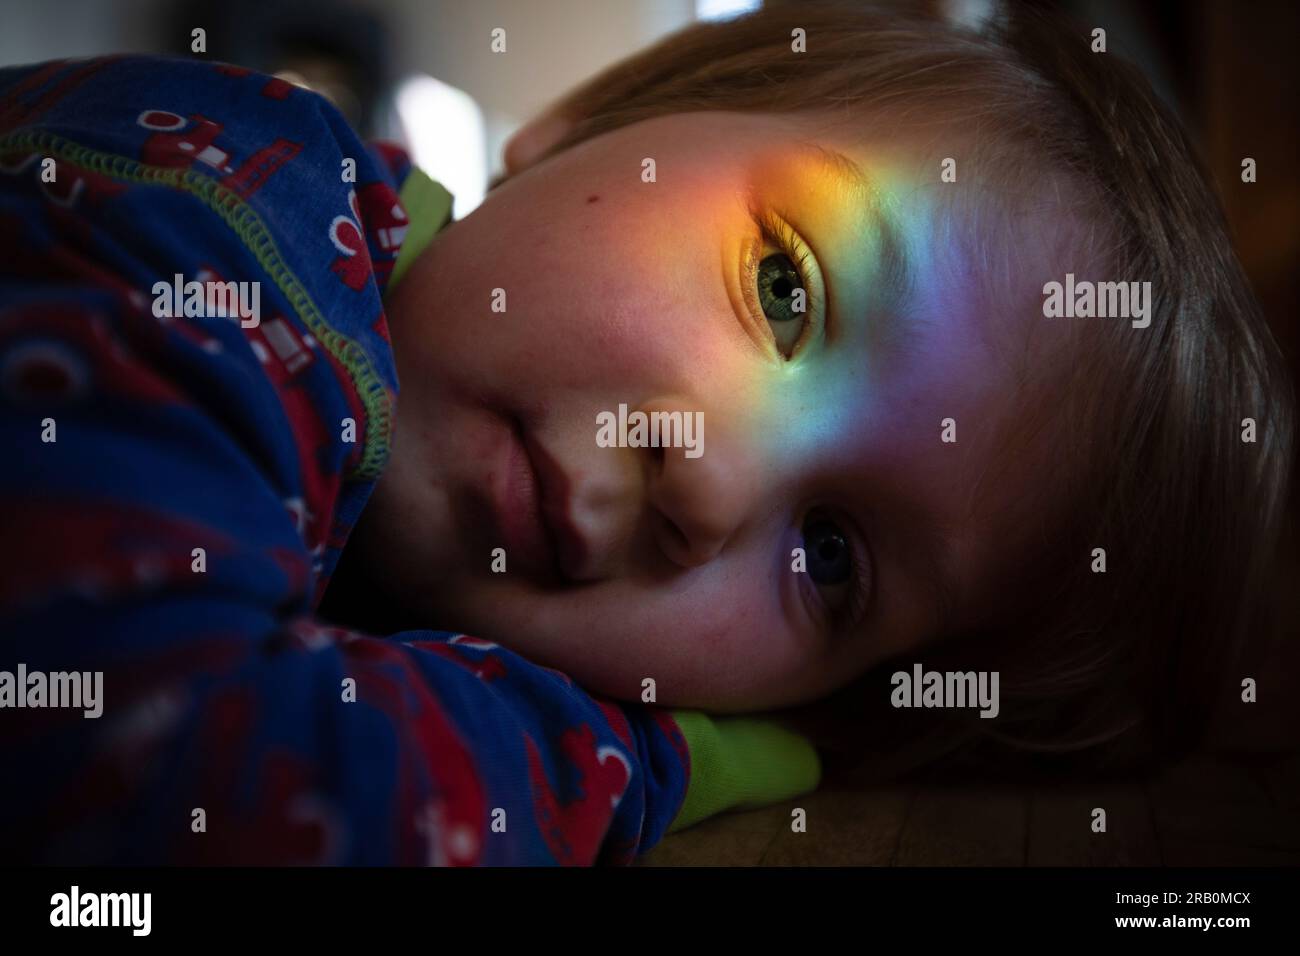 Regenbogenfarben reflektieren das Gesicht des Jungen Stockfoto